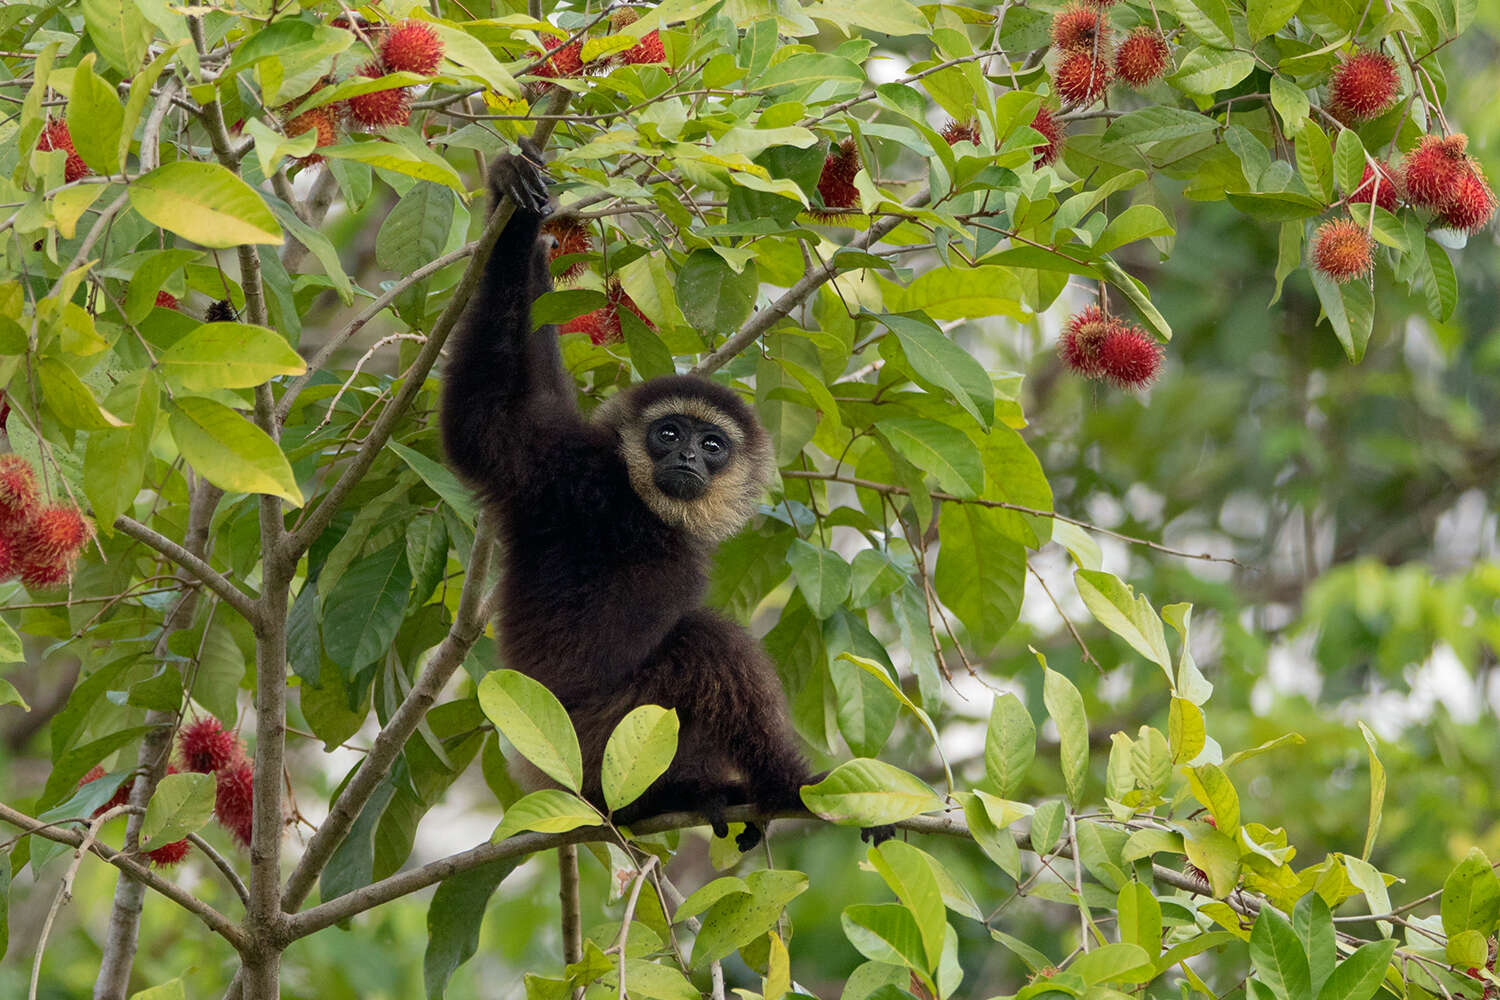 Image of Agile Gibbon